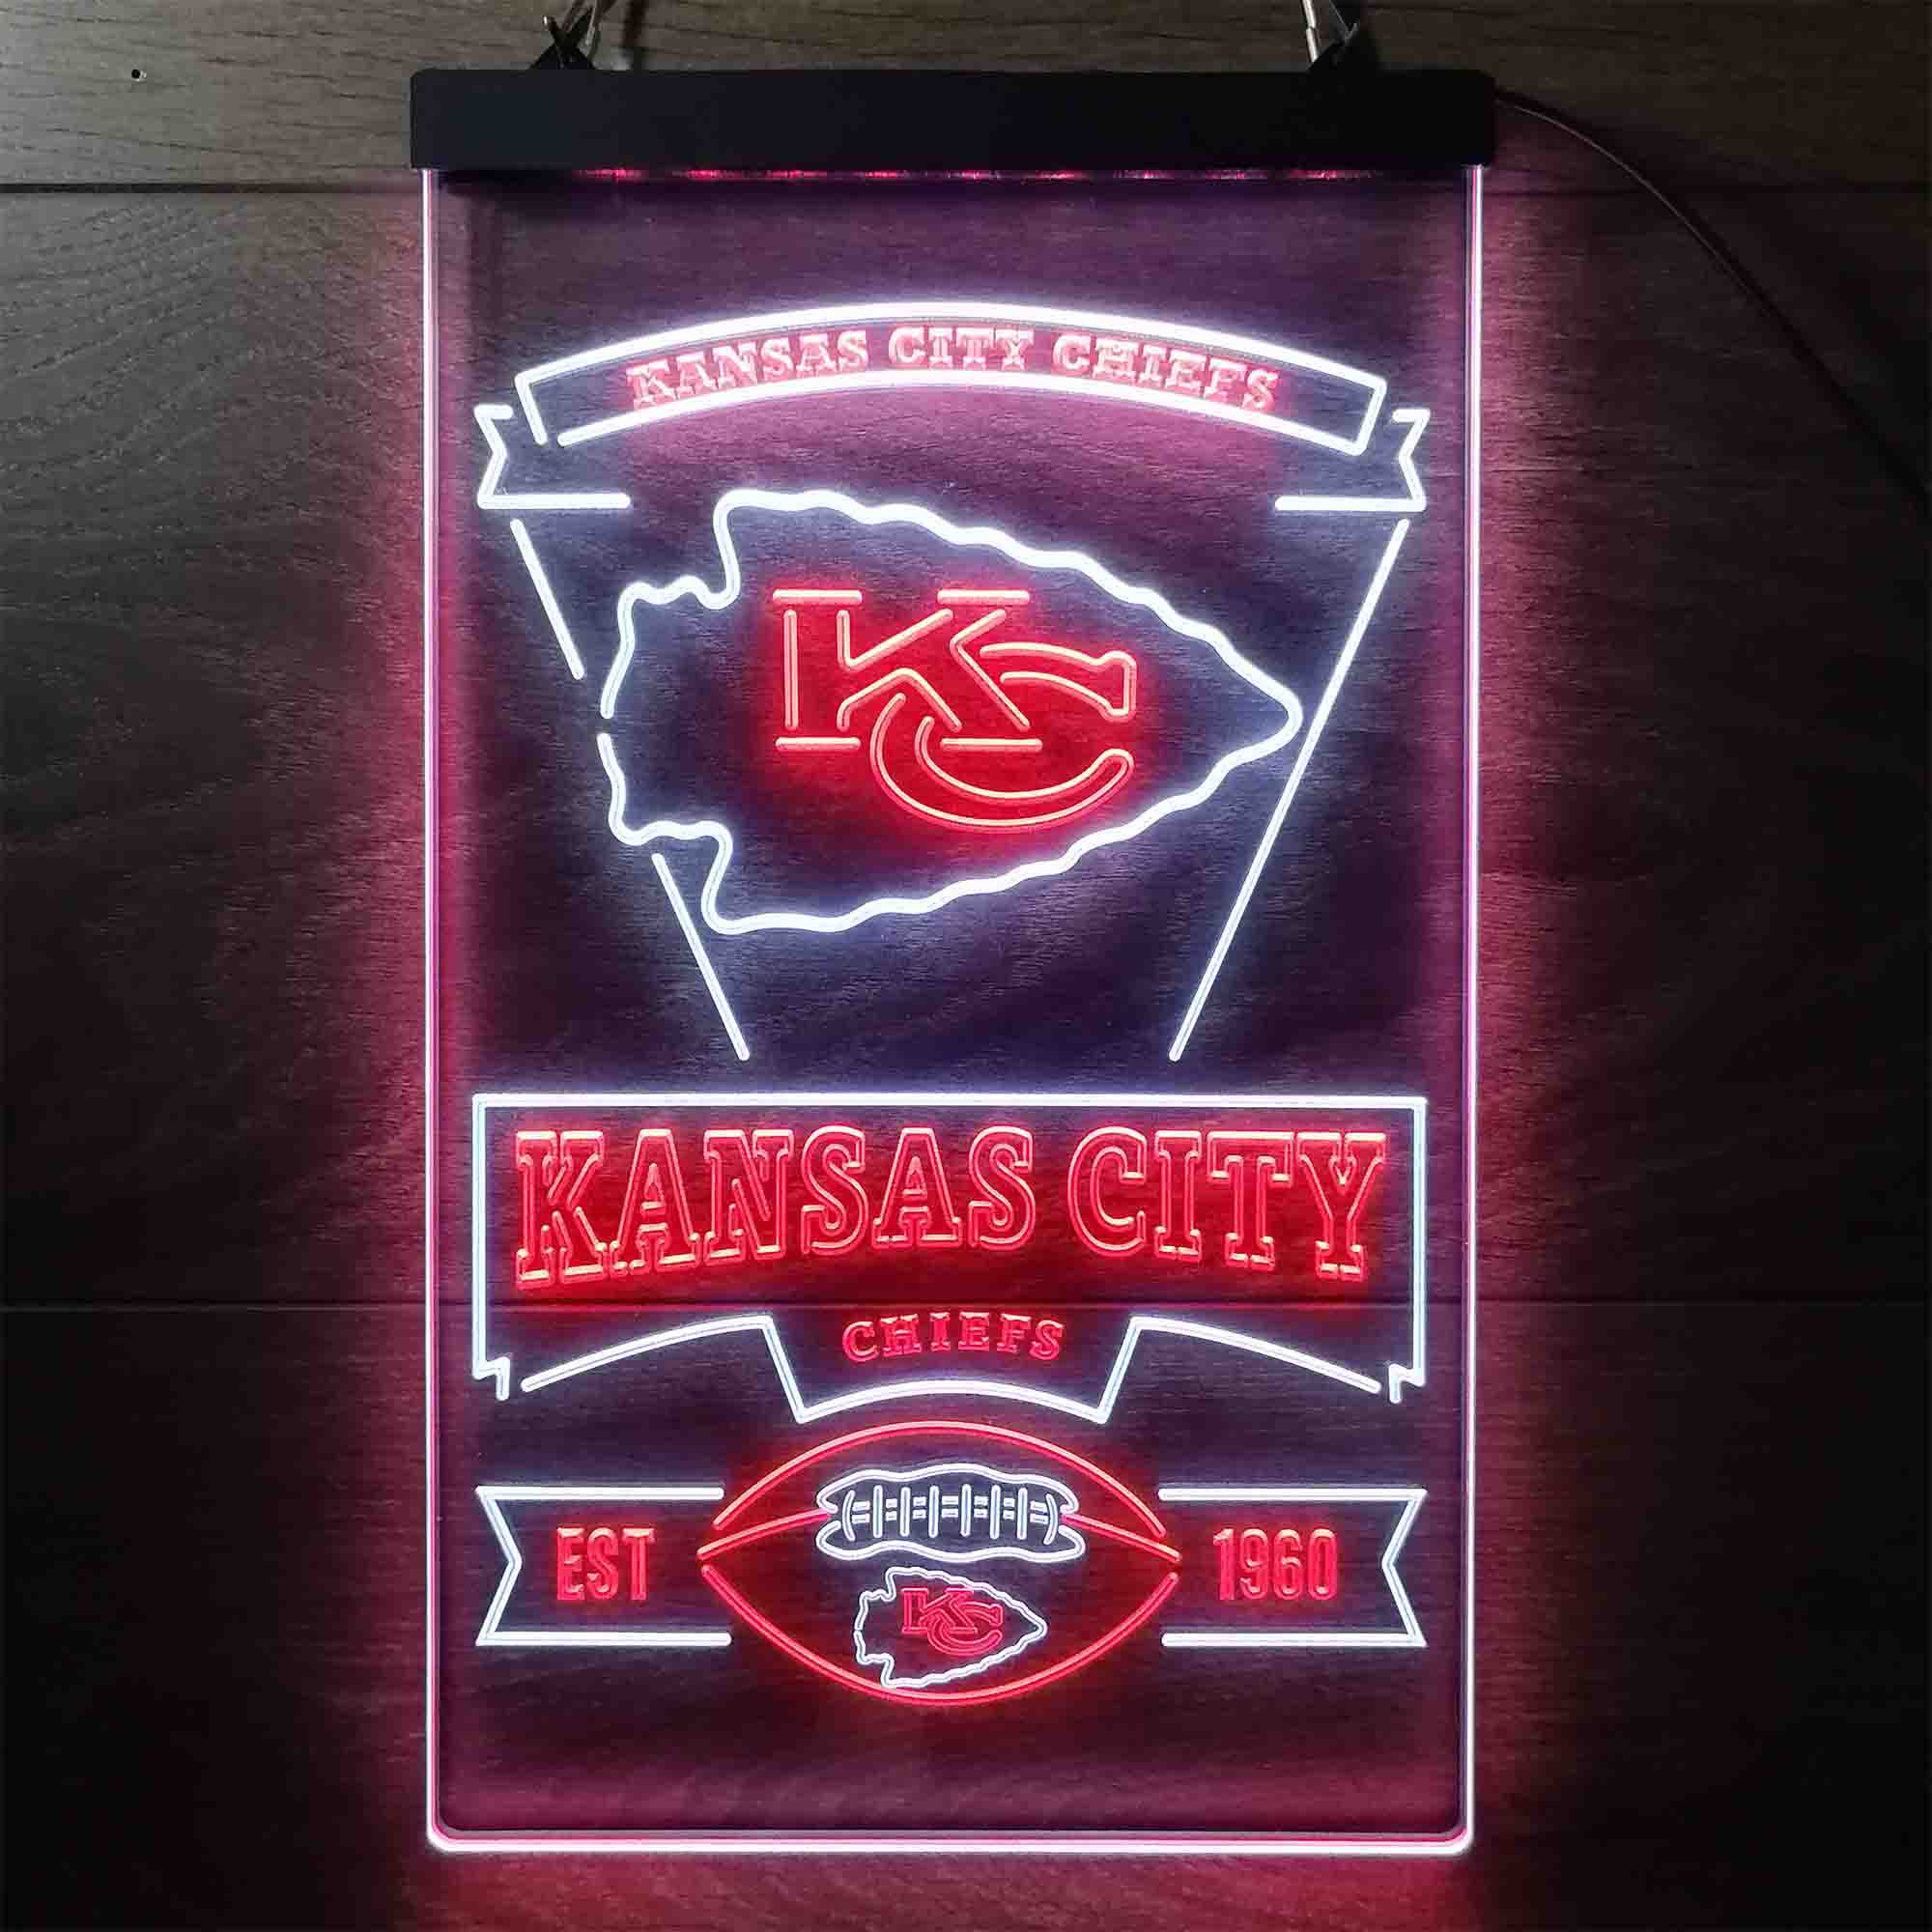 Kansas City Chiefs EST 1960 Neon LED Sign